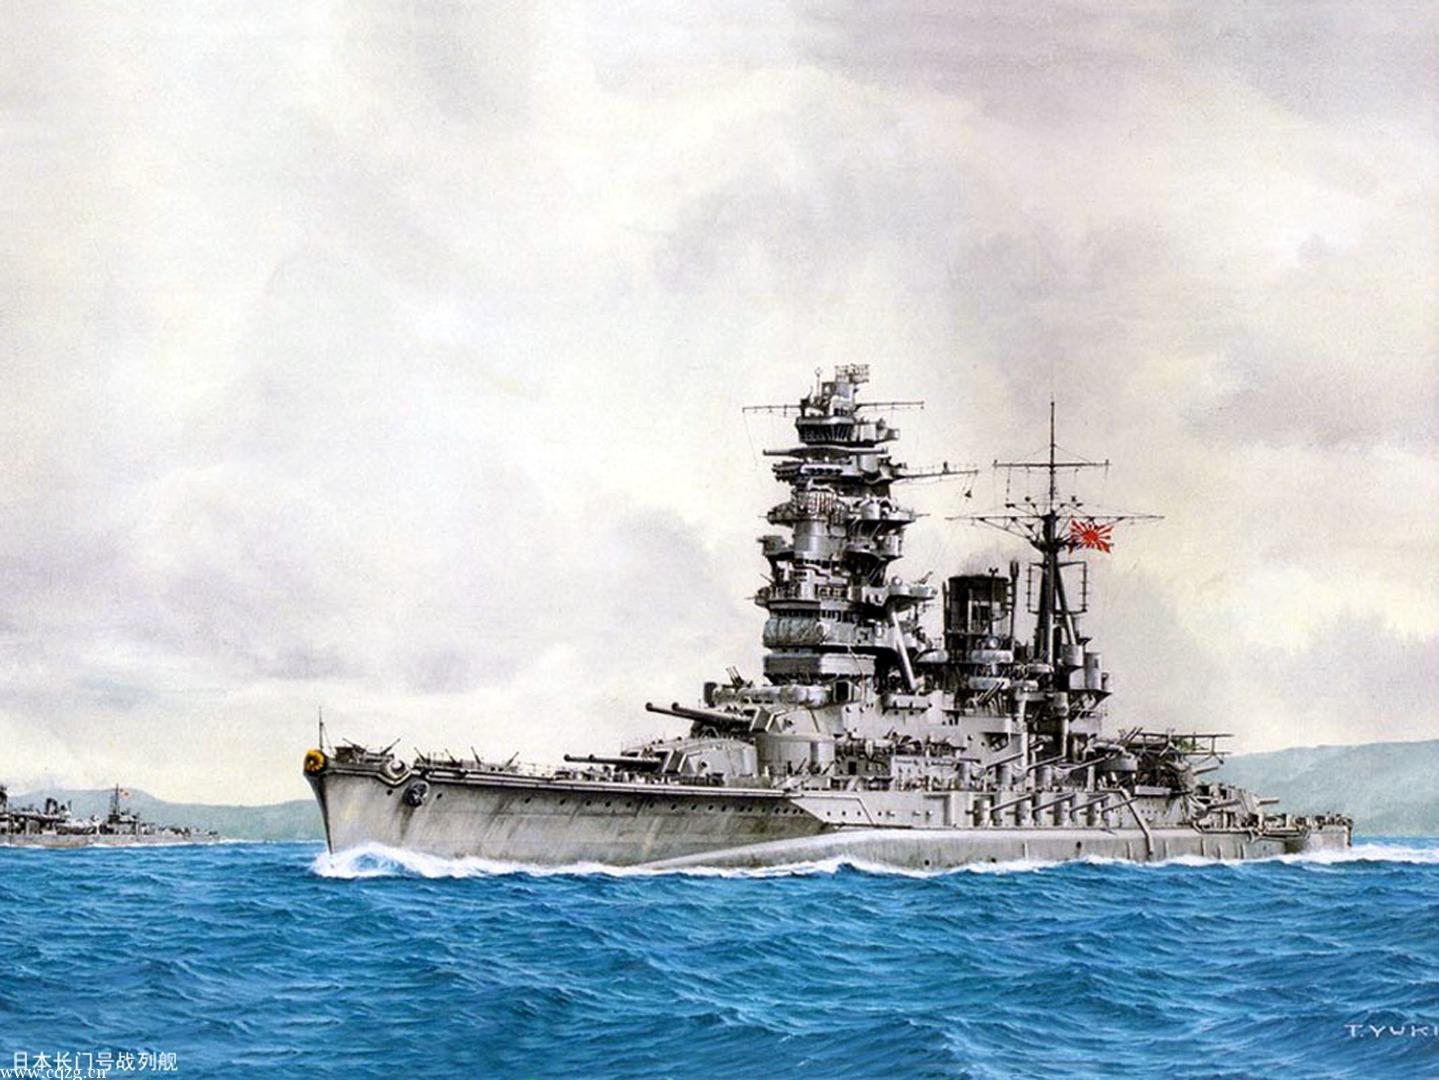 旧日本海军题材模型选购指南第一期